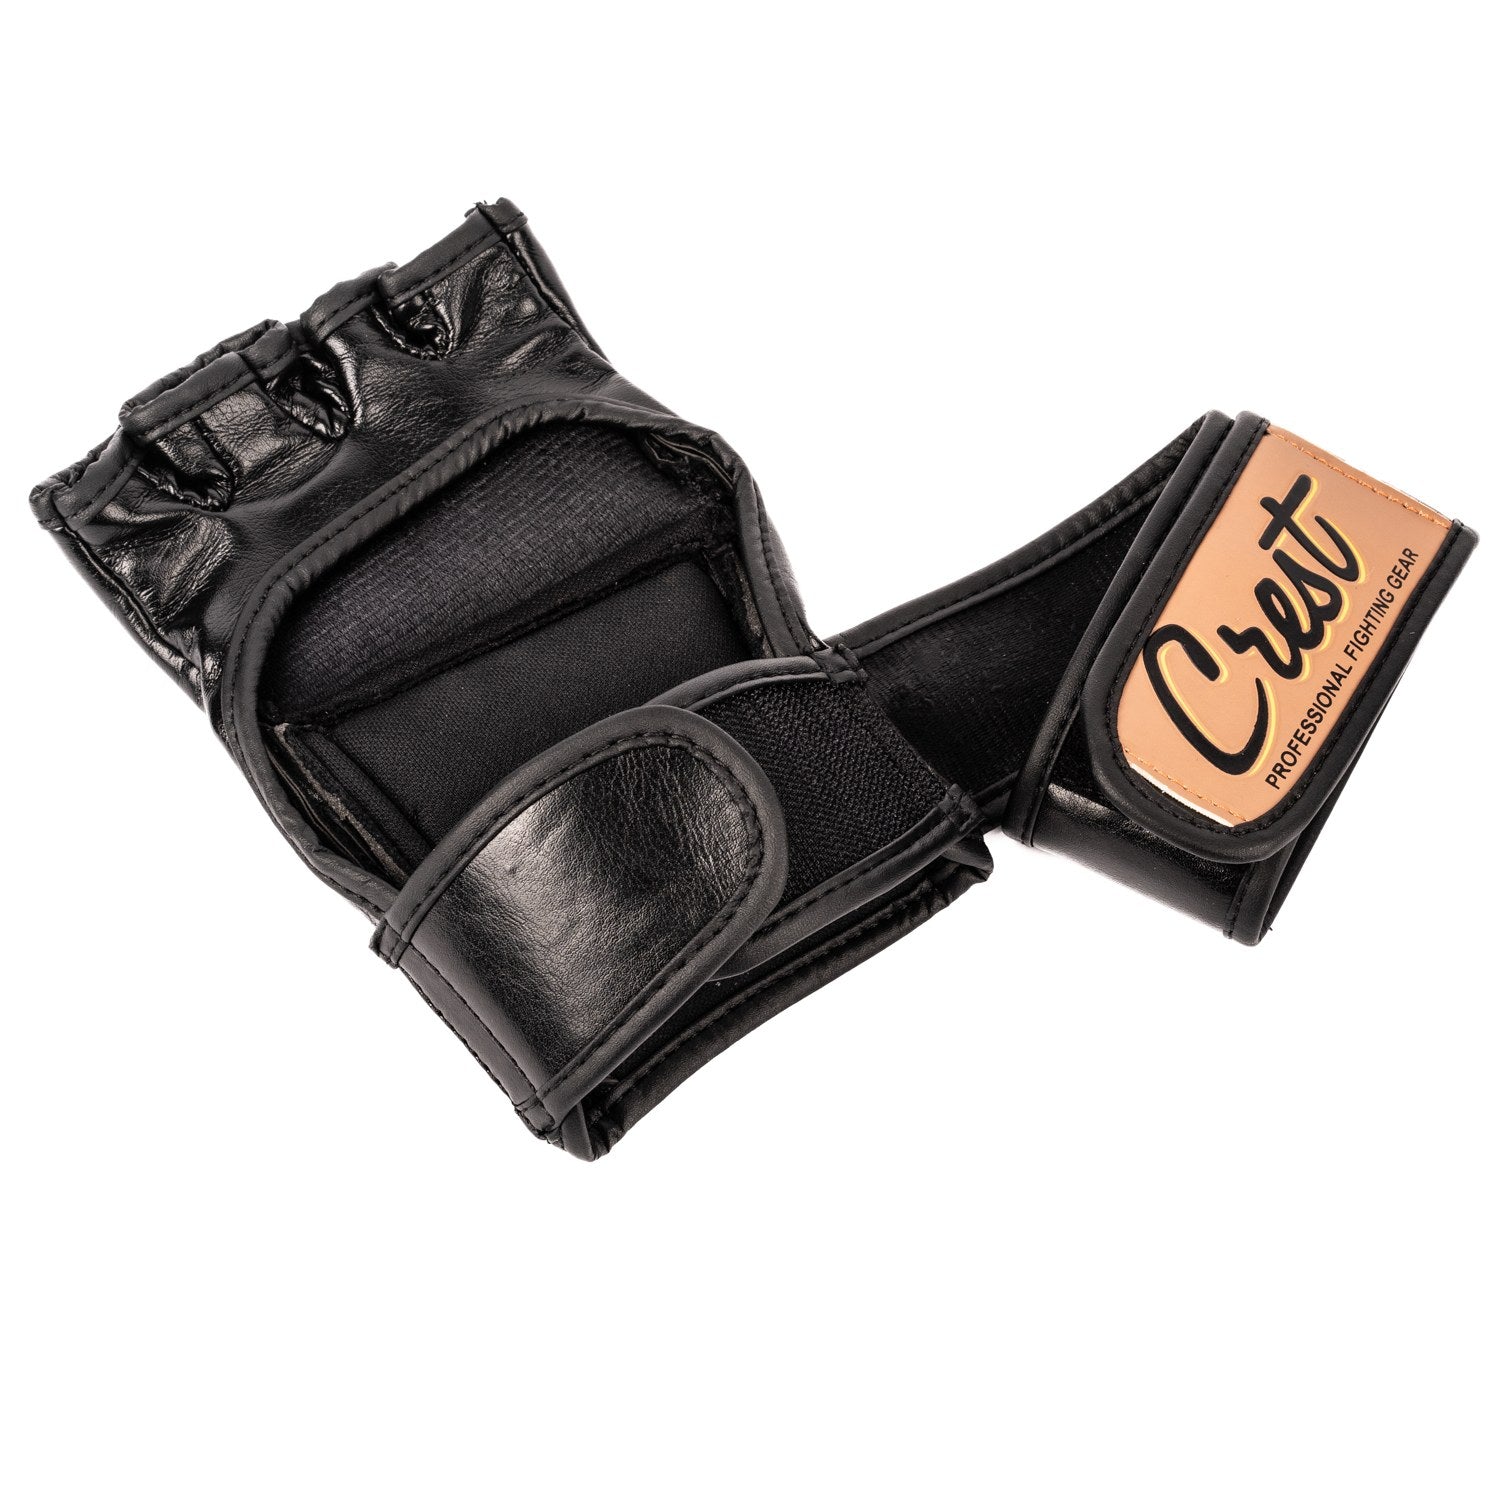 MMA-handskar (Cage)